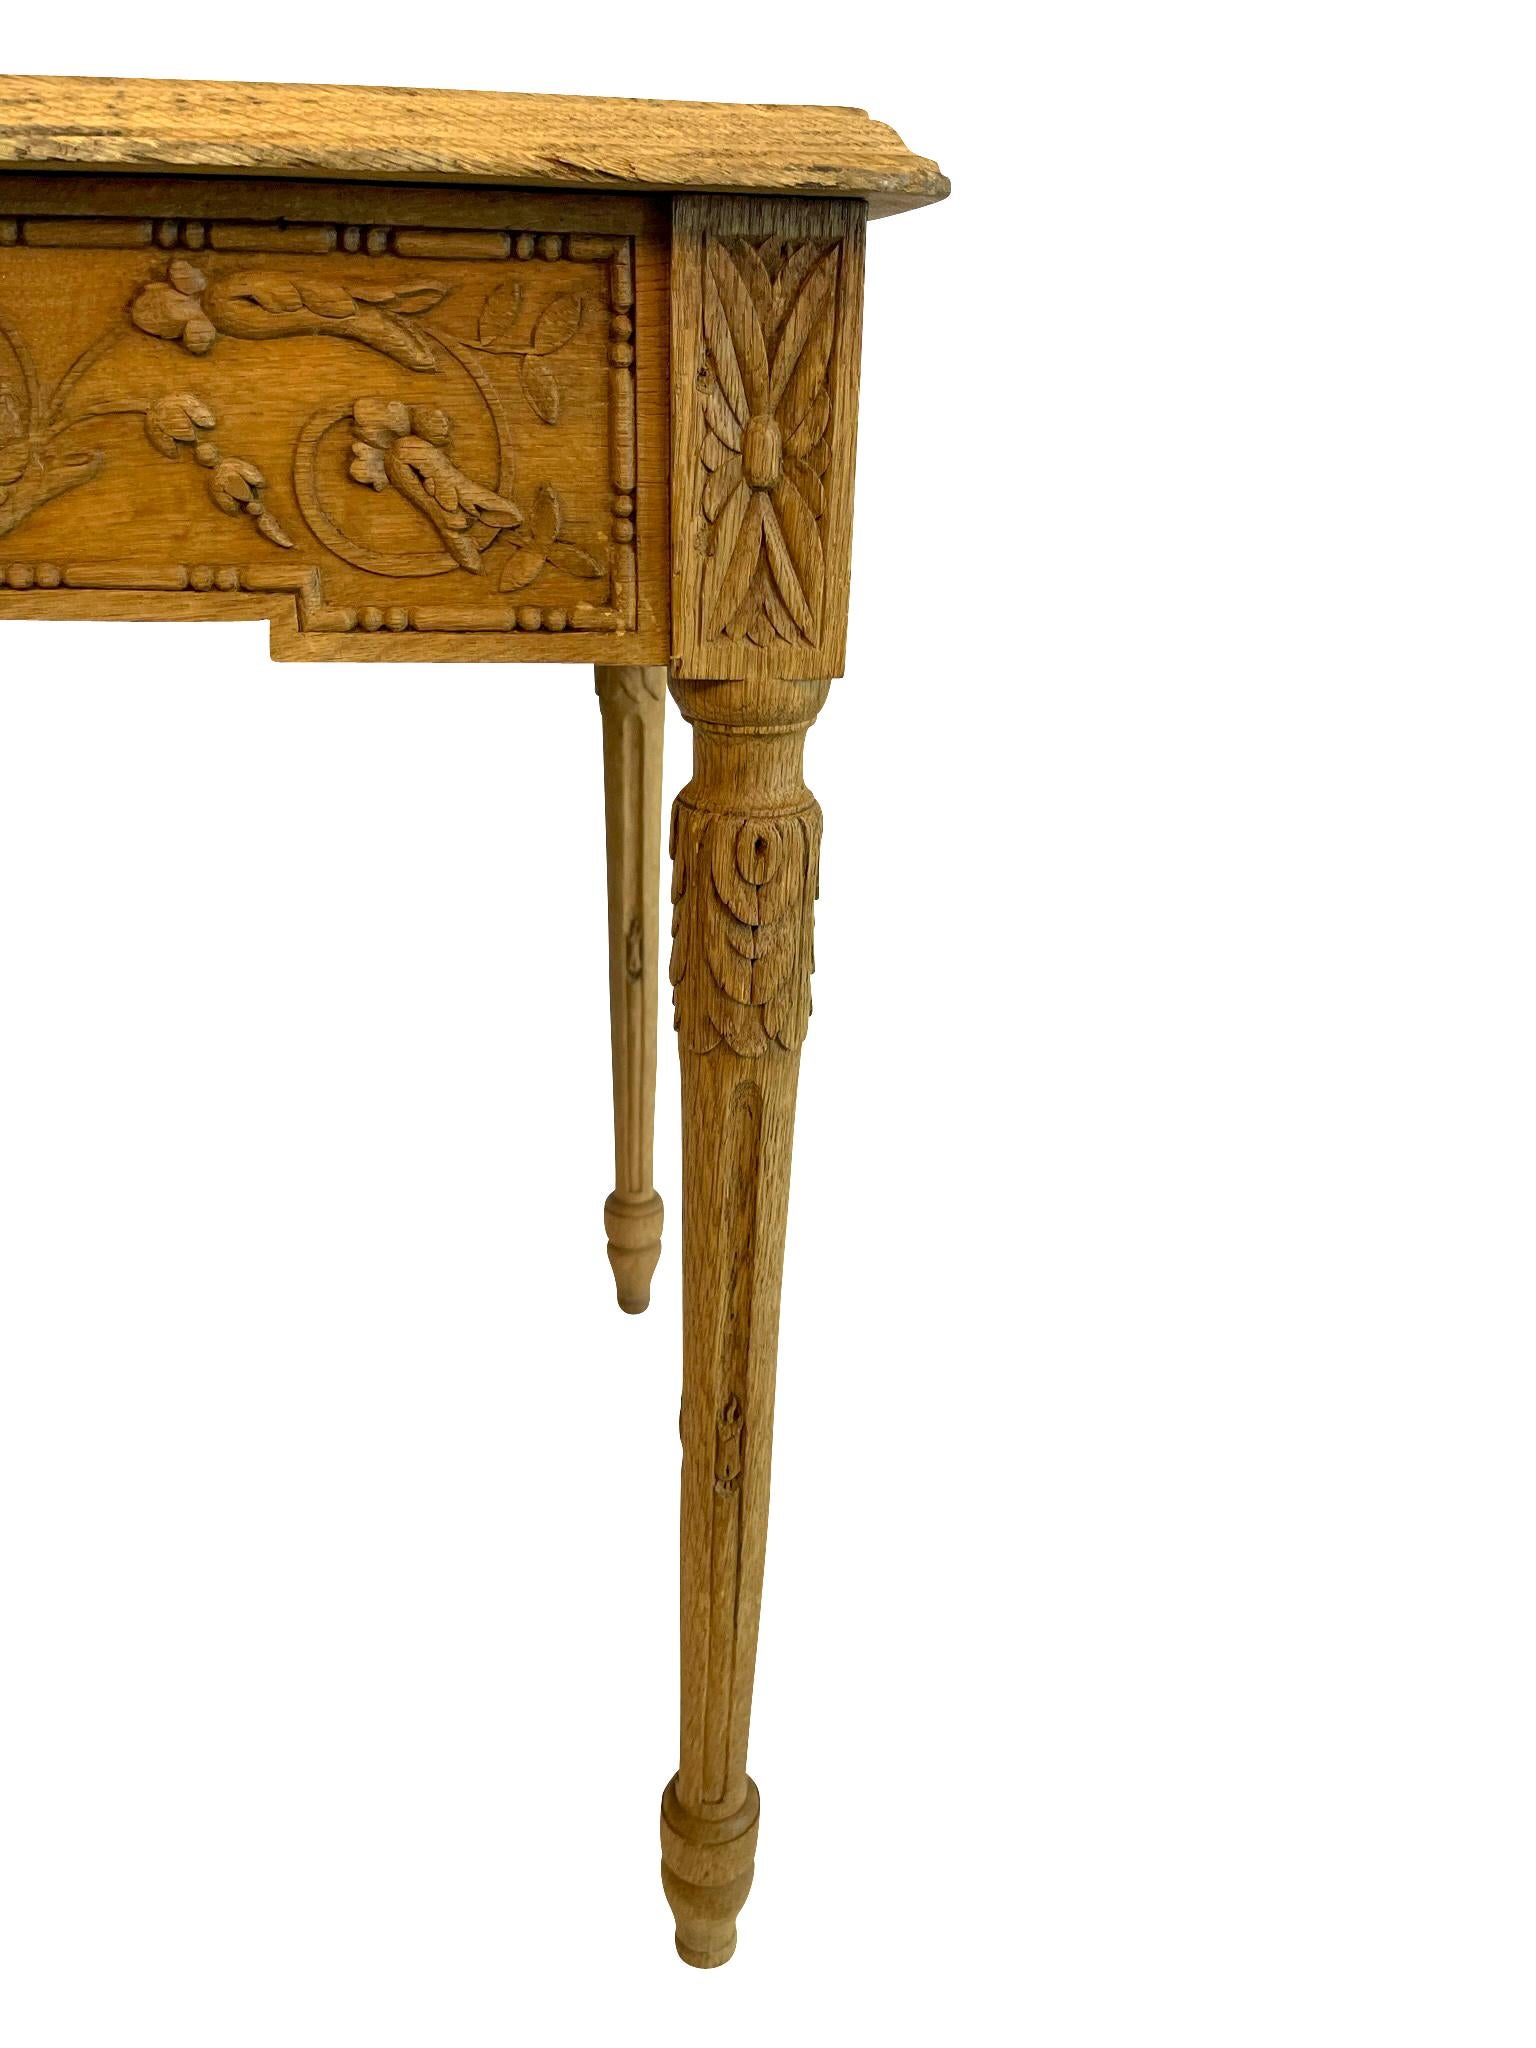 Charmante table d'appoint en chêne blanchi de style Louis XVI, reposant sur des pieds fuselés et cannelés, avec un tablier sculpté de style néoclassique - des couronnes de laurier dans un motif feuillu avec des guirlandes de rubans et de nœuds